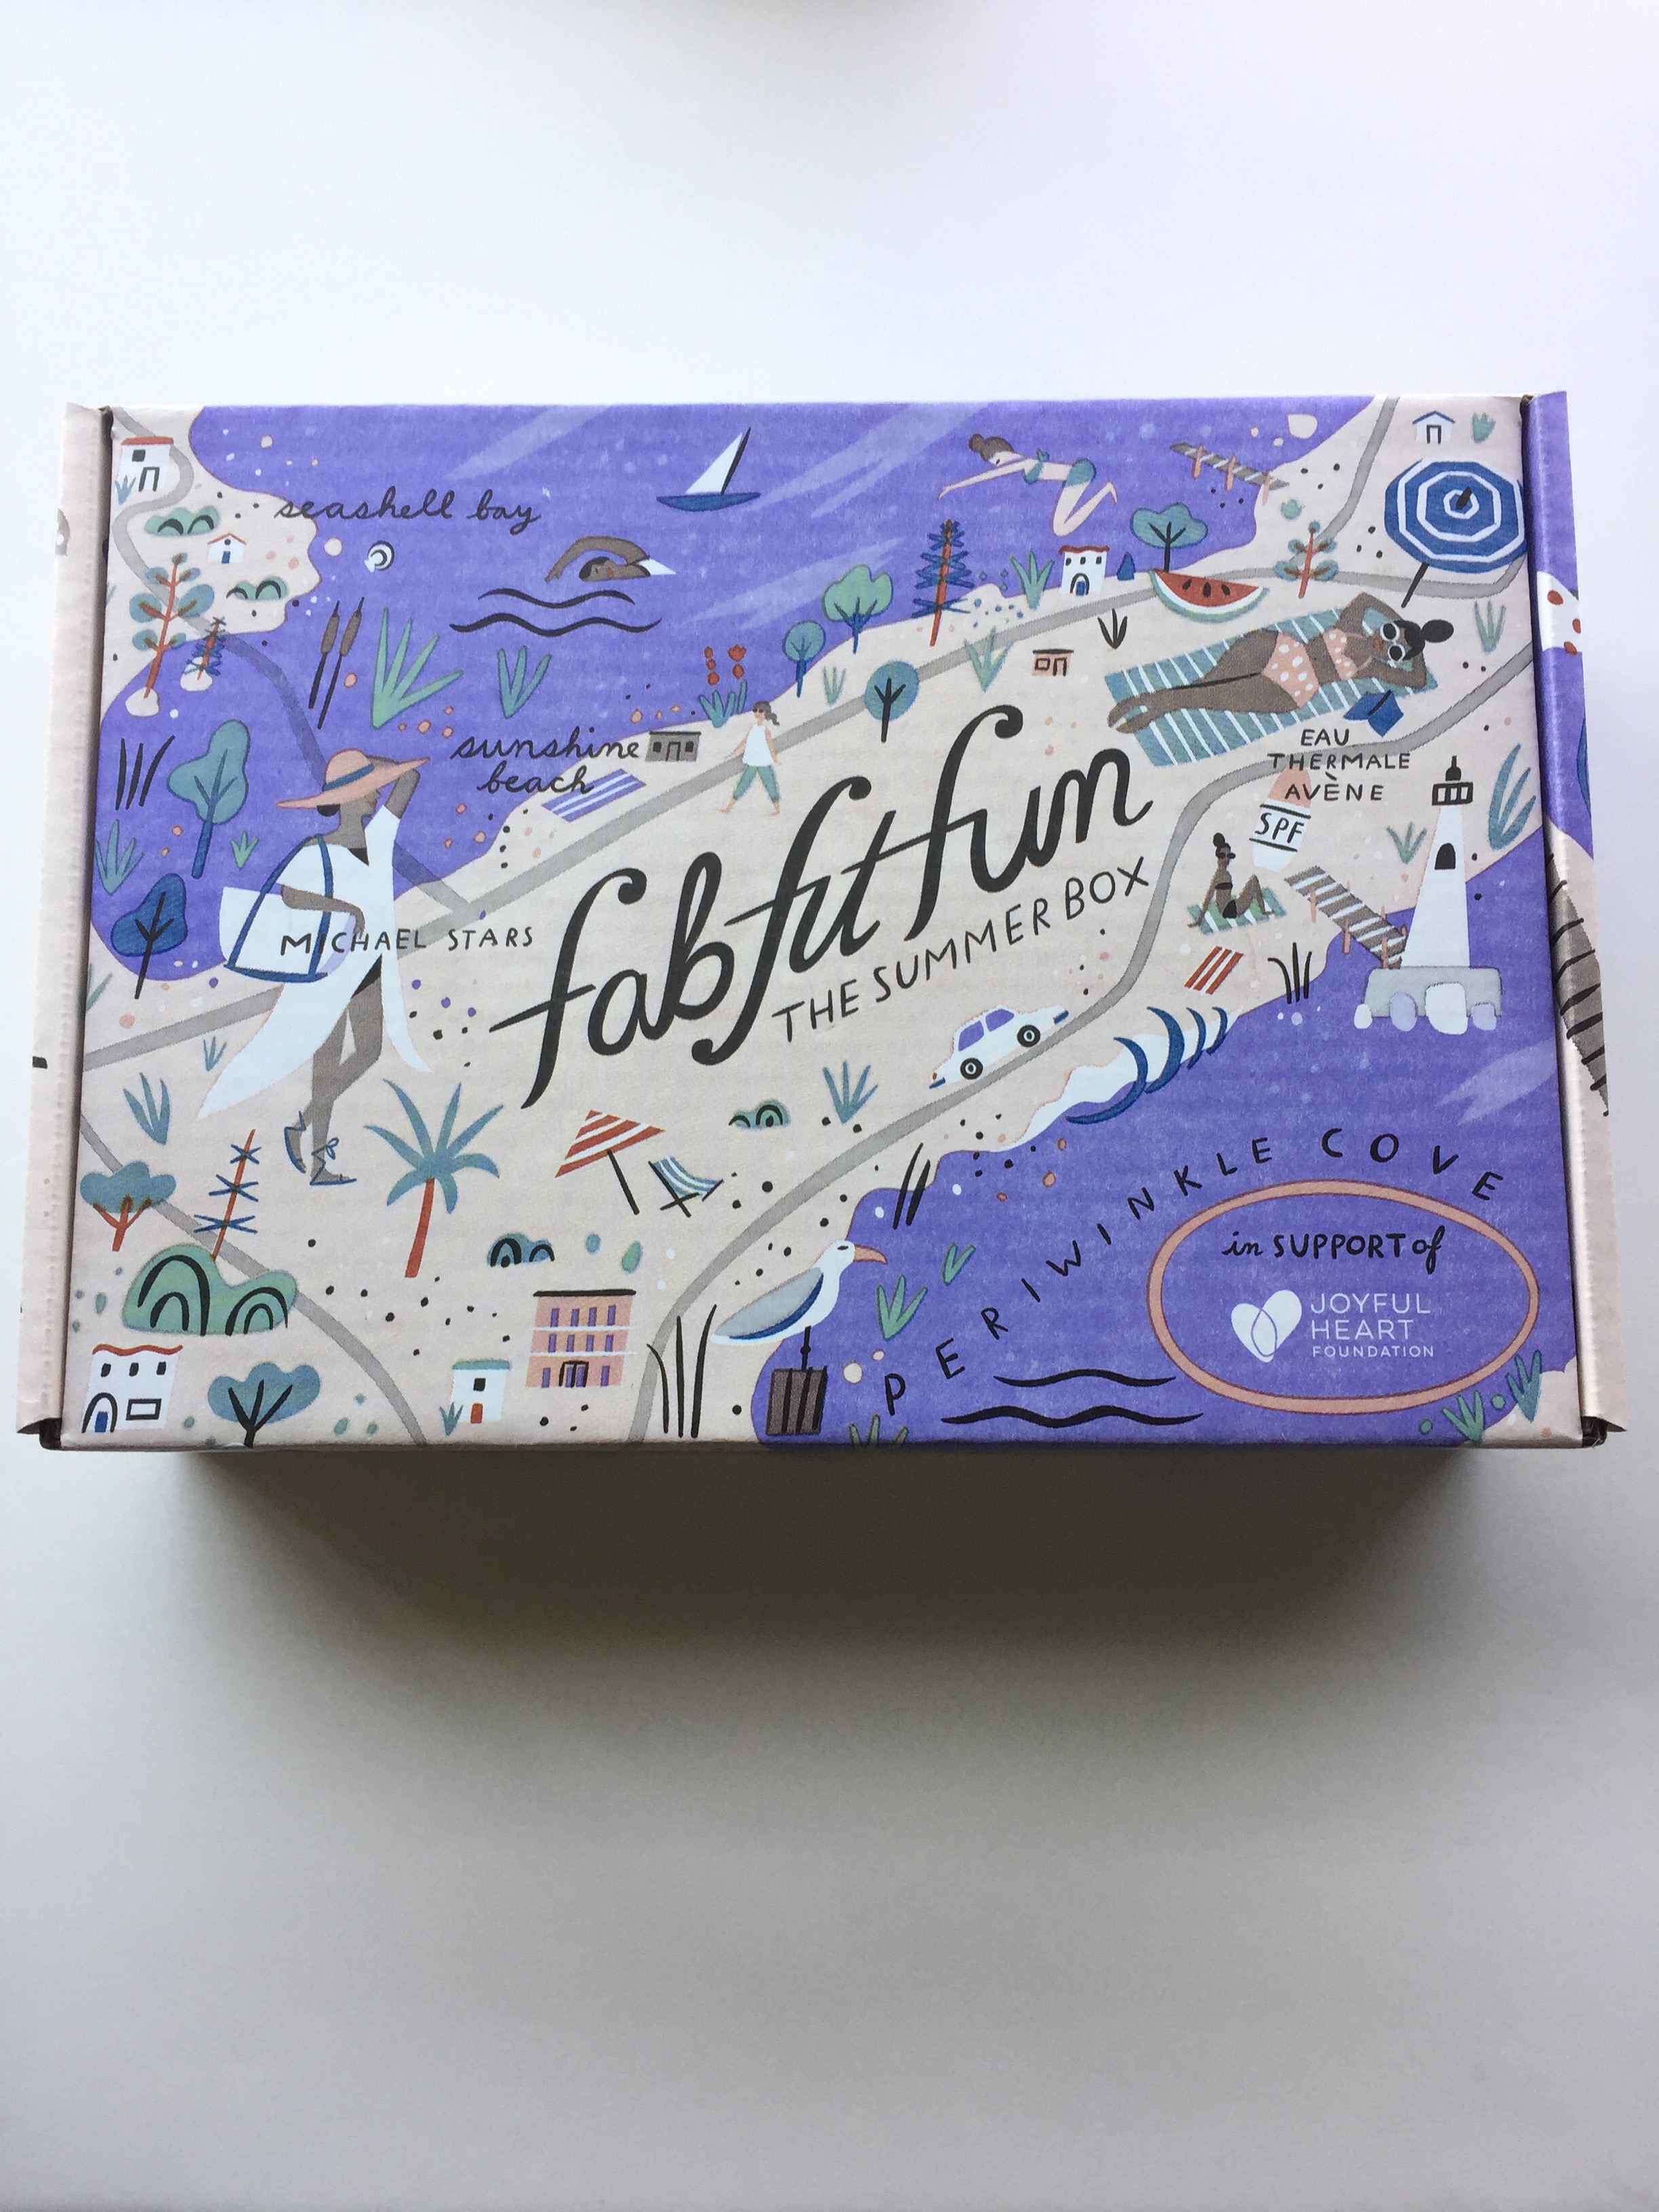 FabFitFun Summer 2017 Box Design